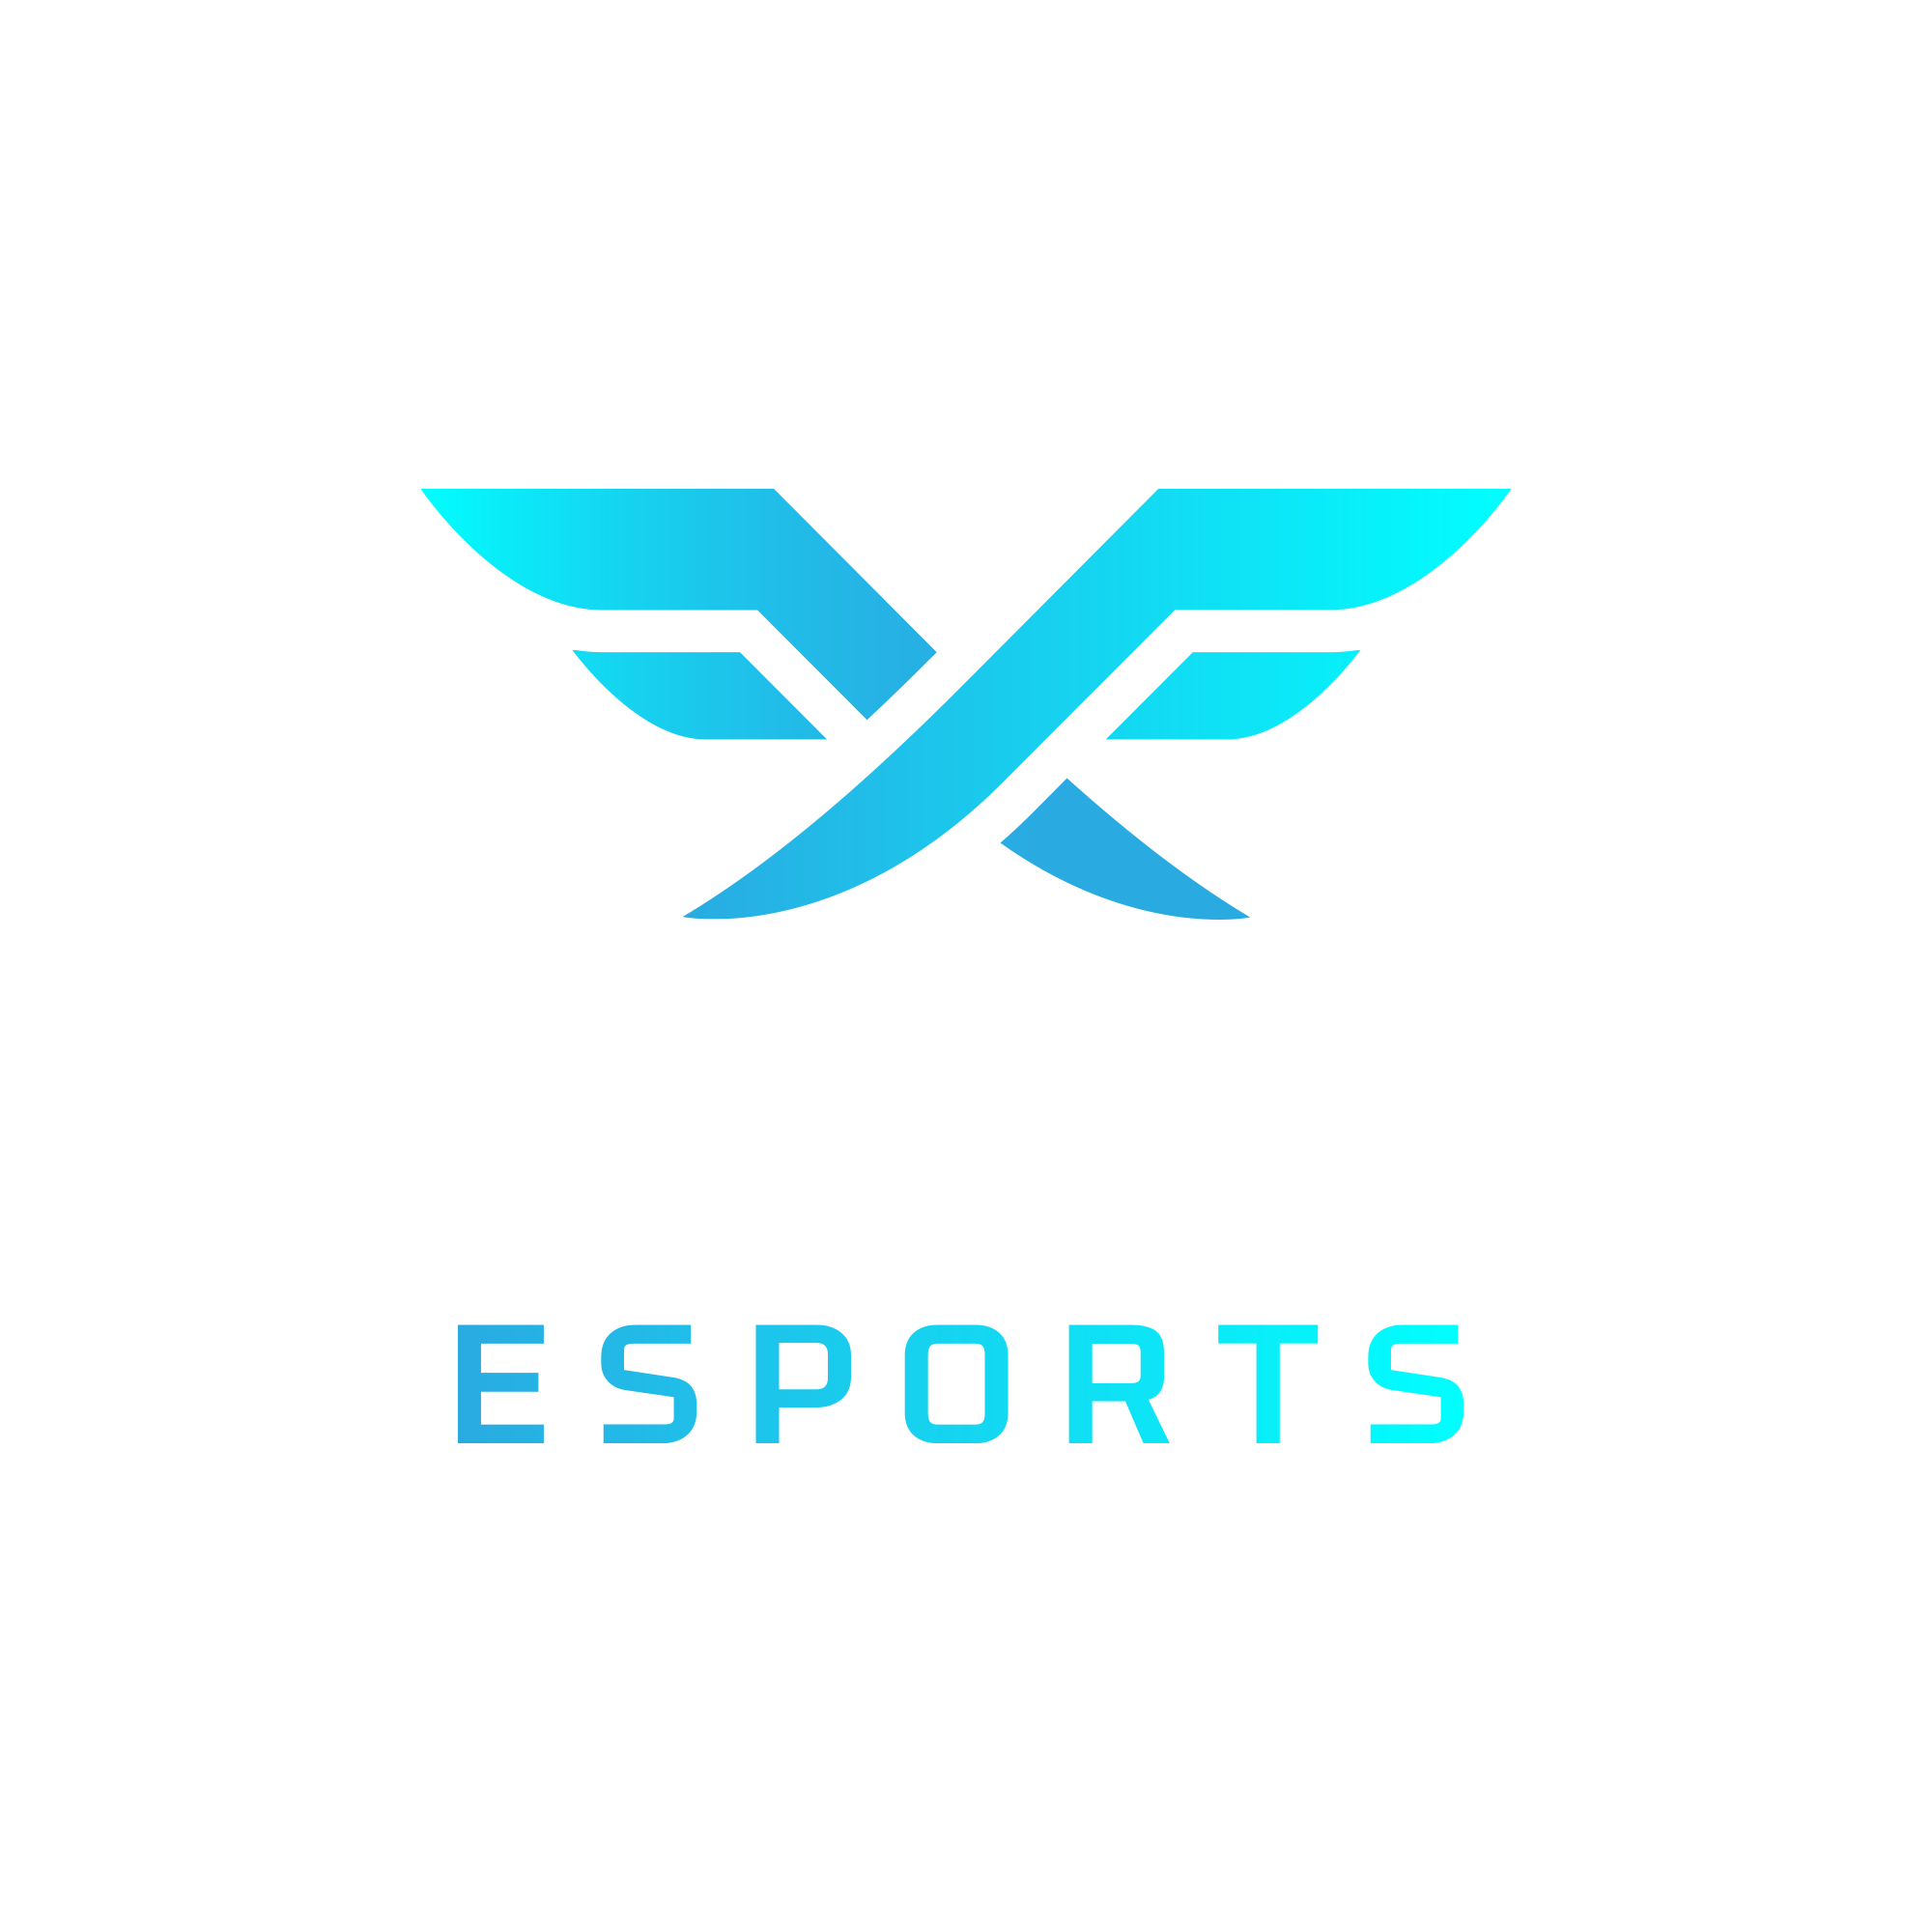 Fire Flux Esports